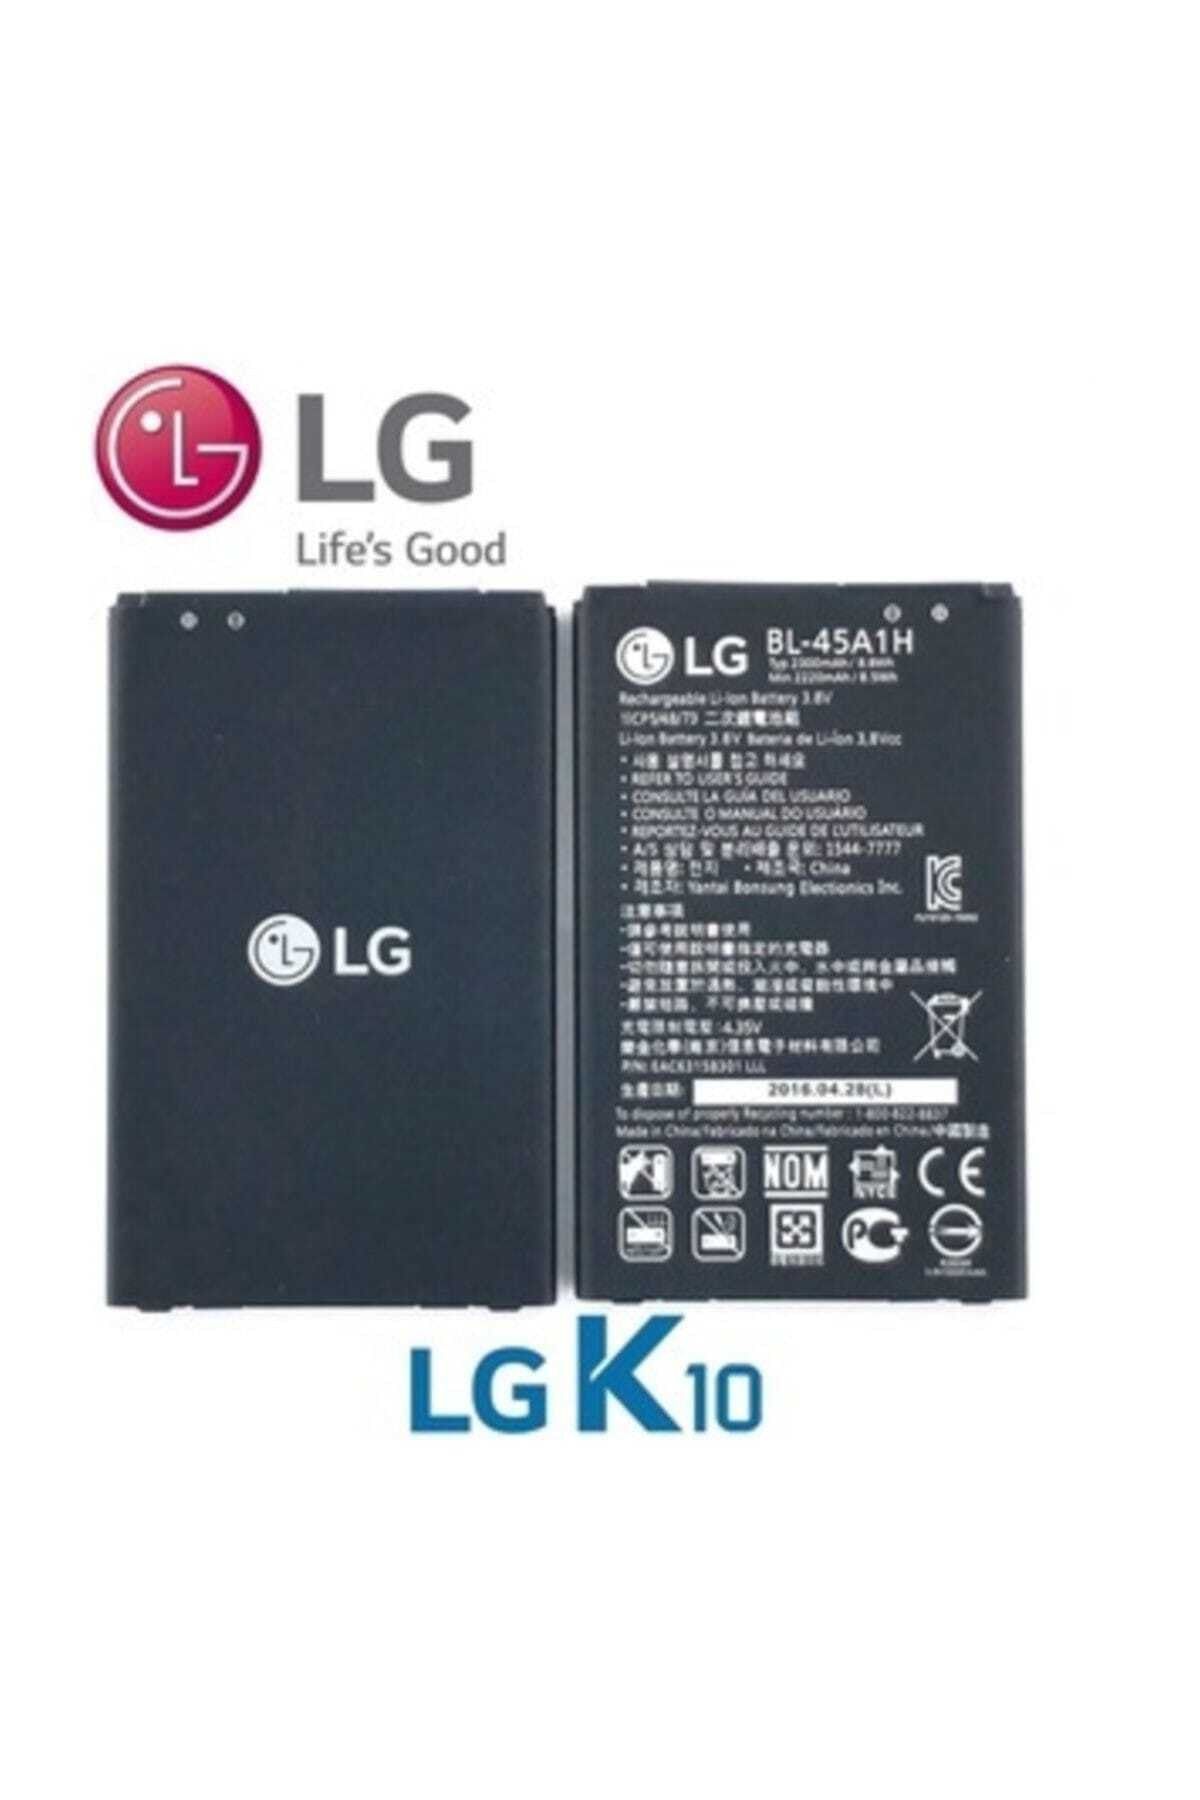 LG K10 (bl-45a1h) Batarya Pil